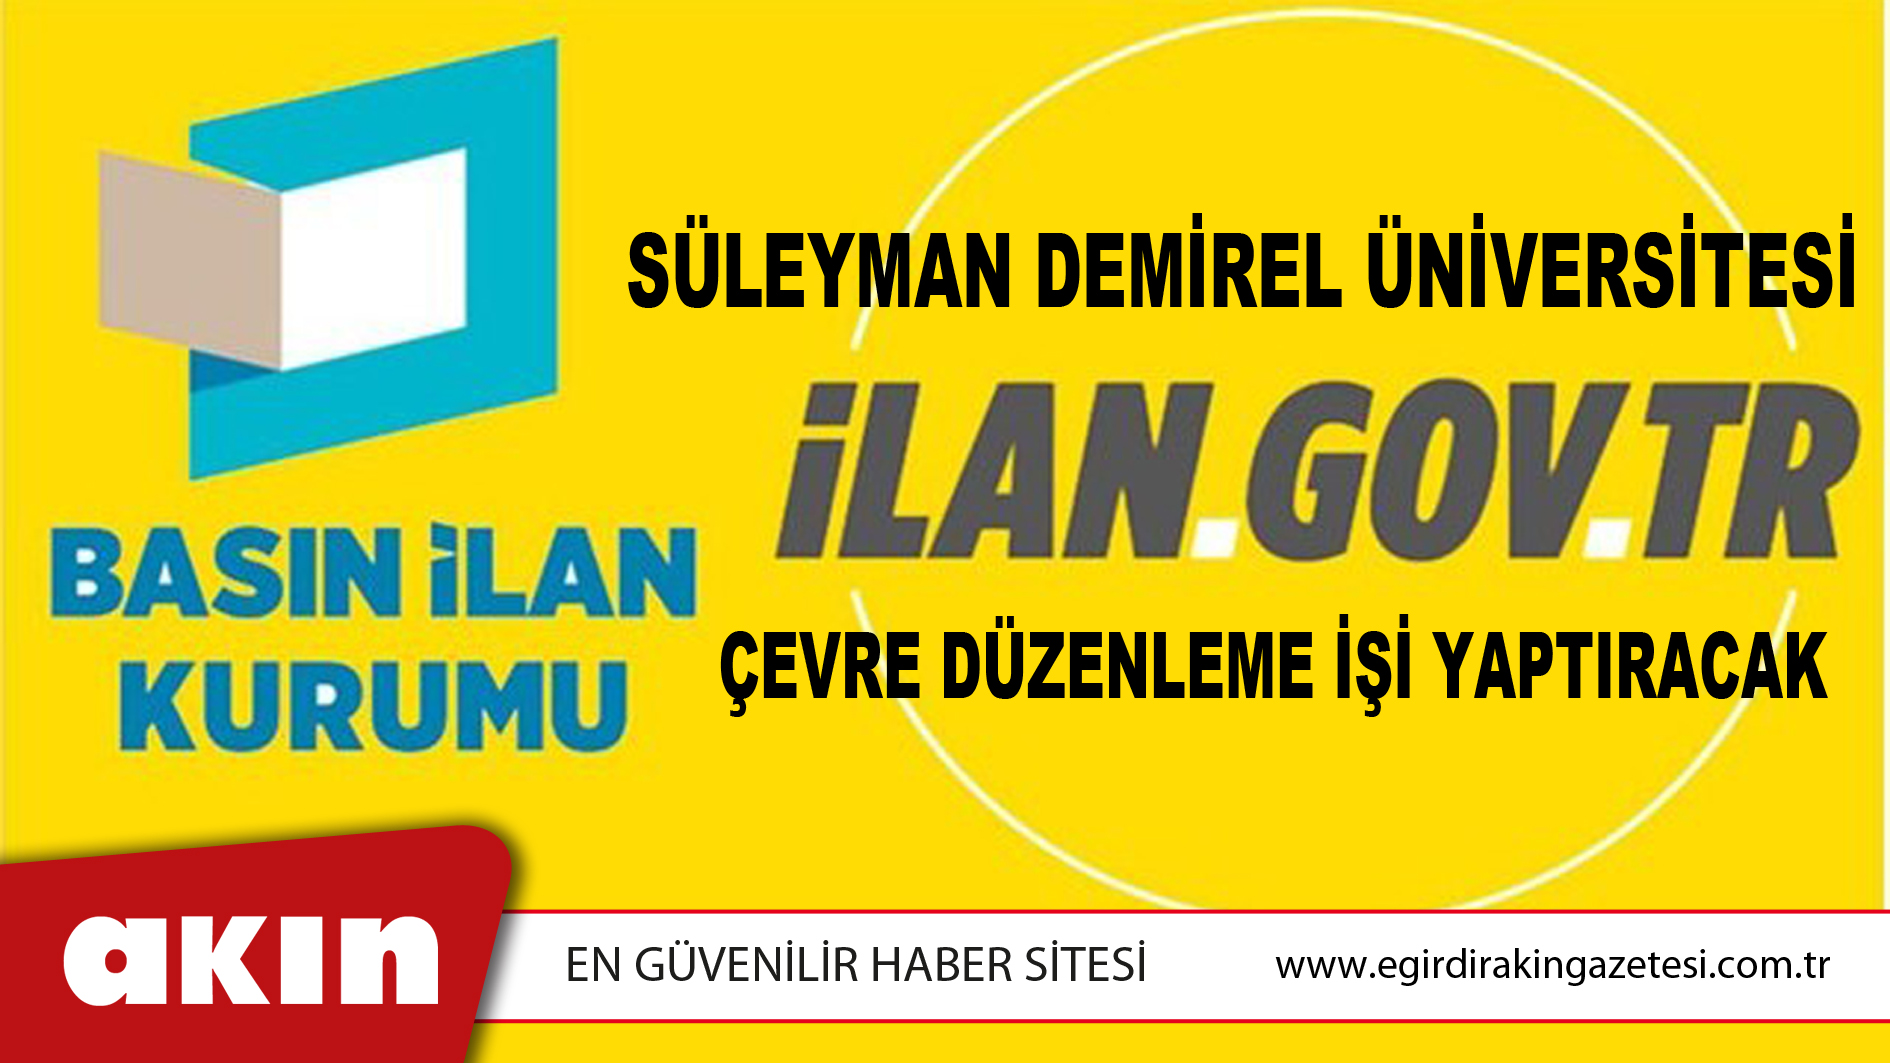 Süleyman Demirel Üniversitesi Çevre Düzenleme İşi Yaptıracak